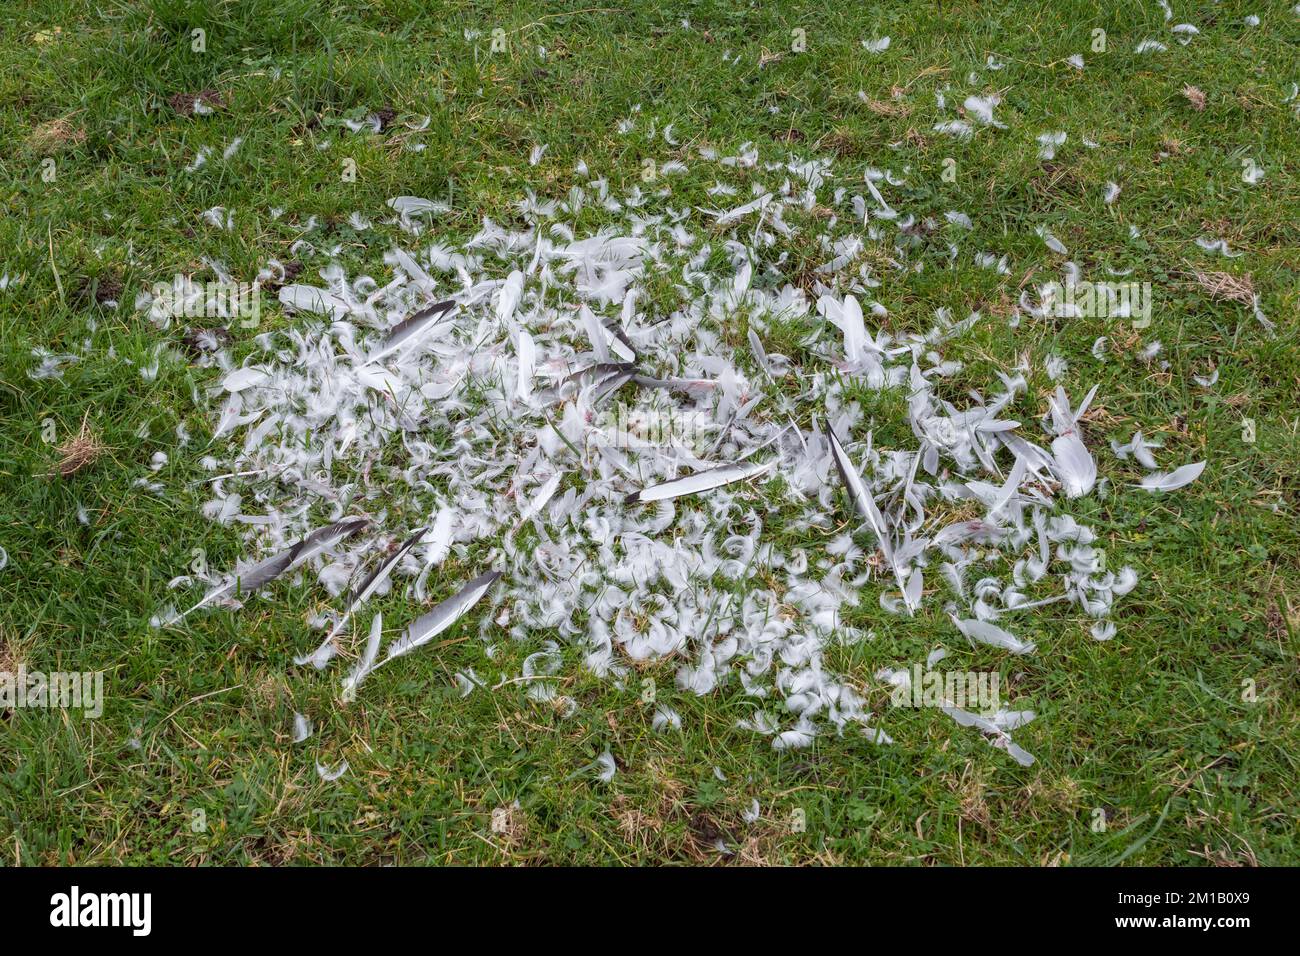 Beaucoup de plumes d'oiseau marquant le site d'une chasse réussie de renard ou d'oiseau de proie dans un champ Runnymede, Royaume-Uni. Banque D'Images